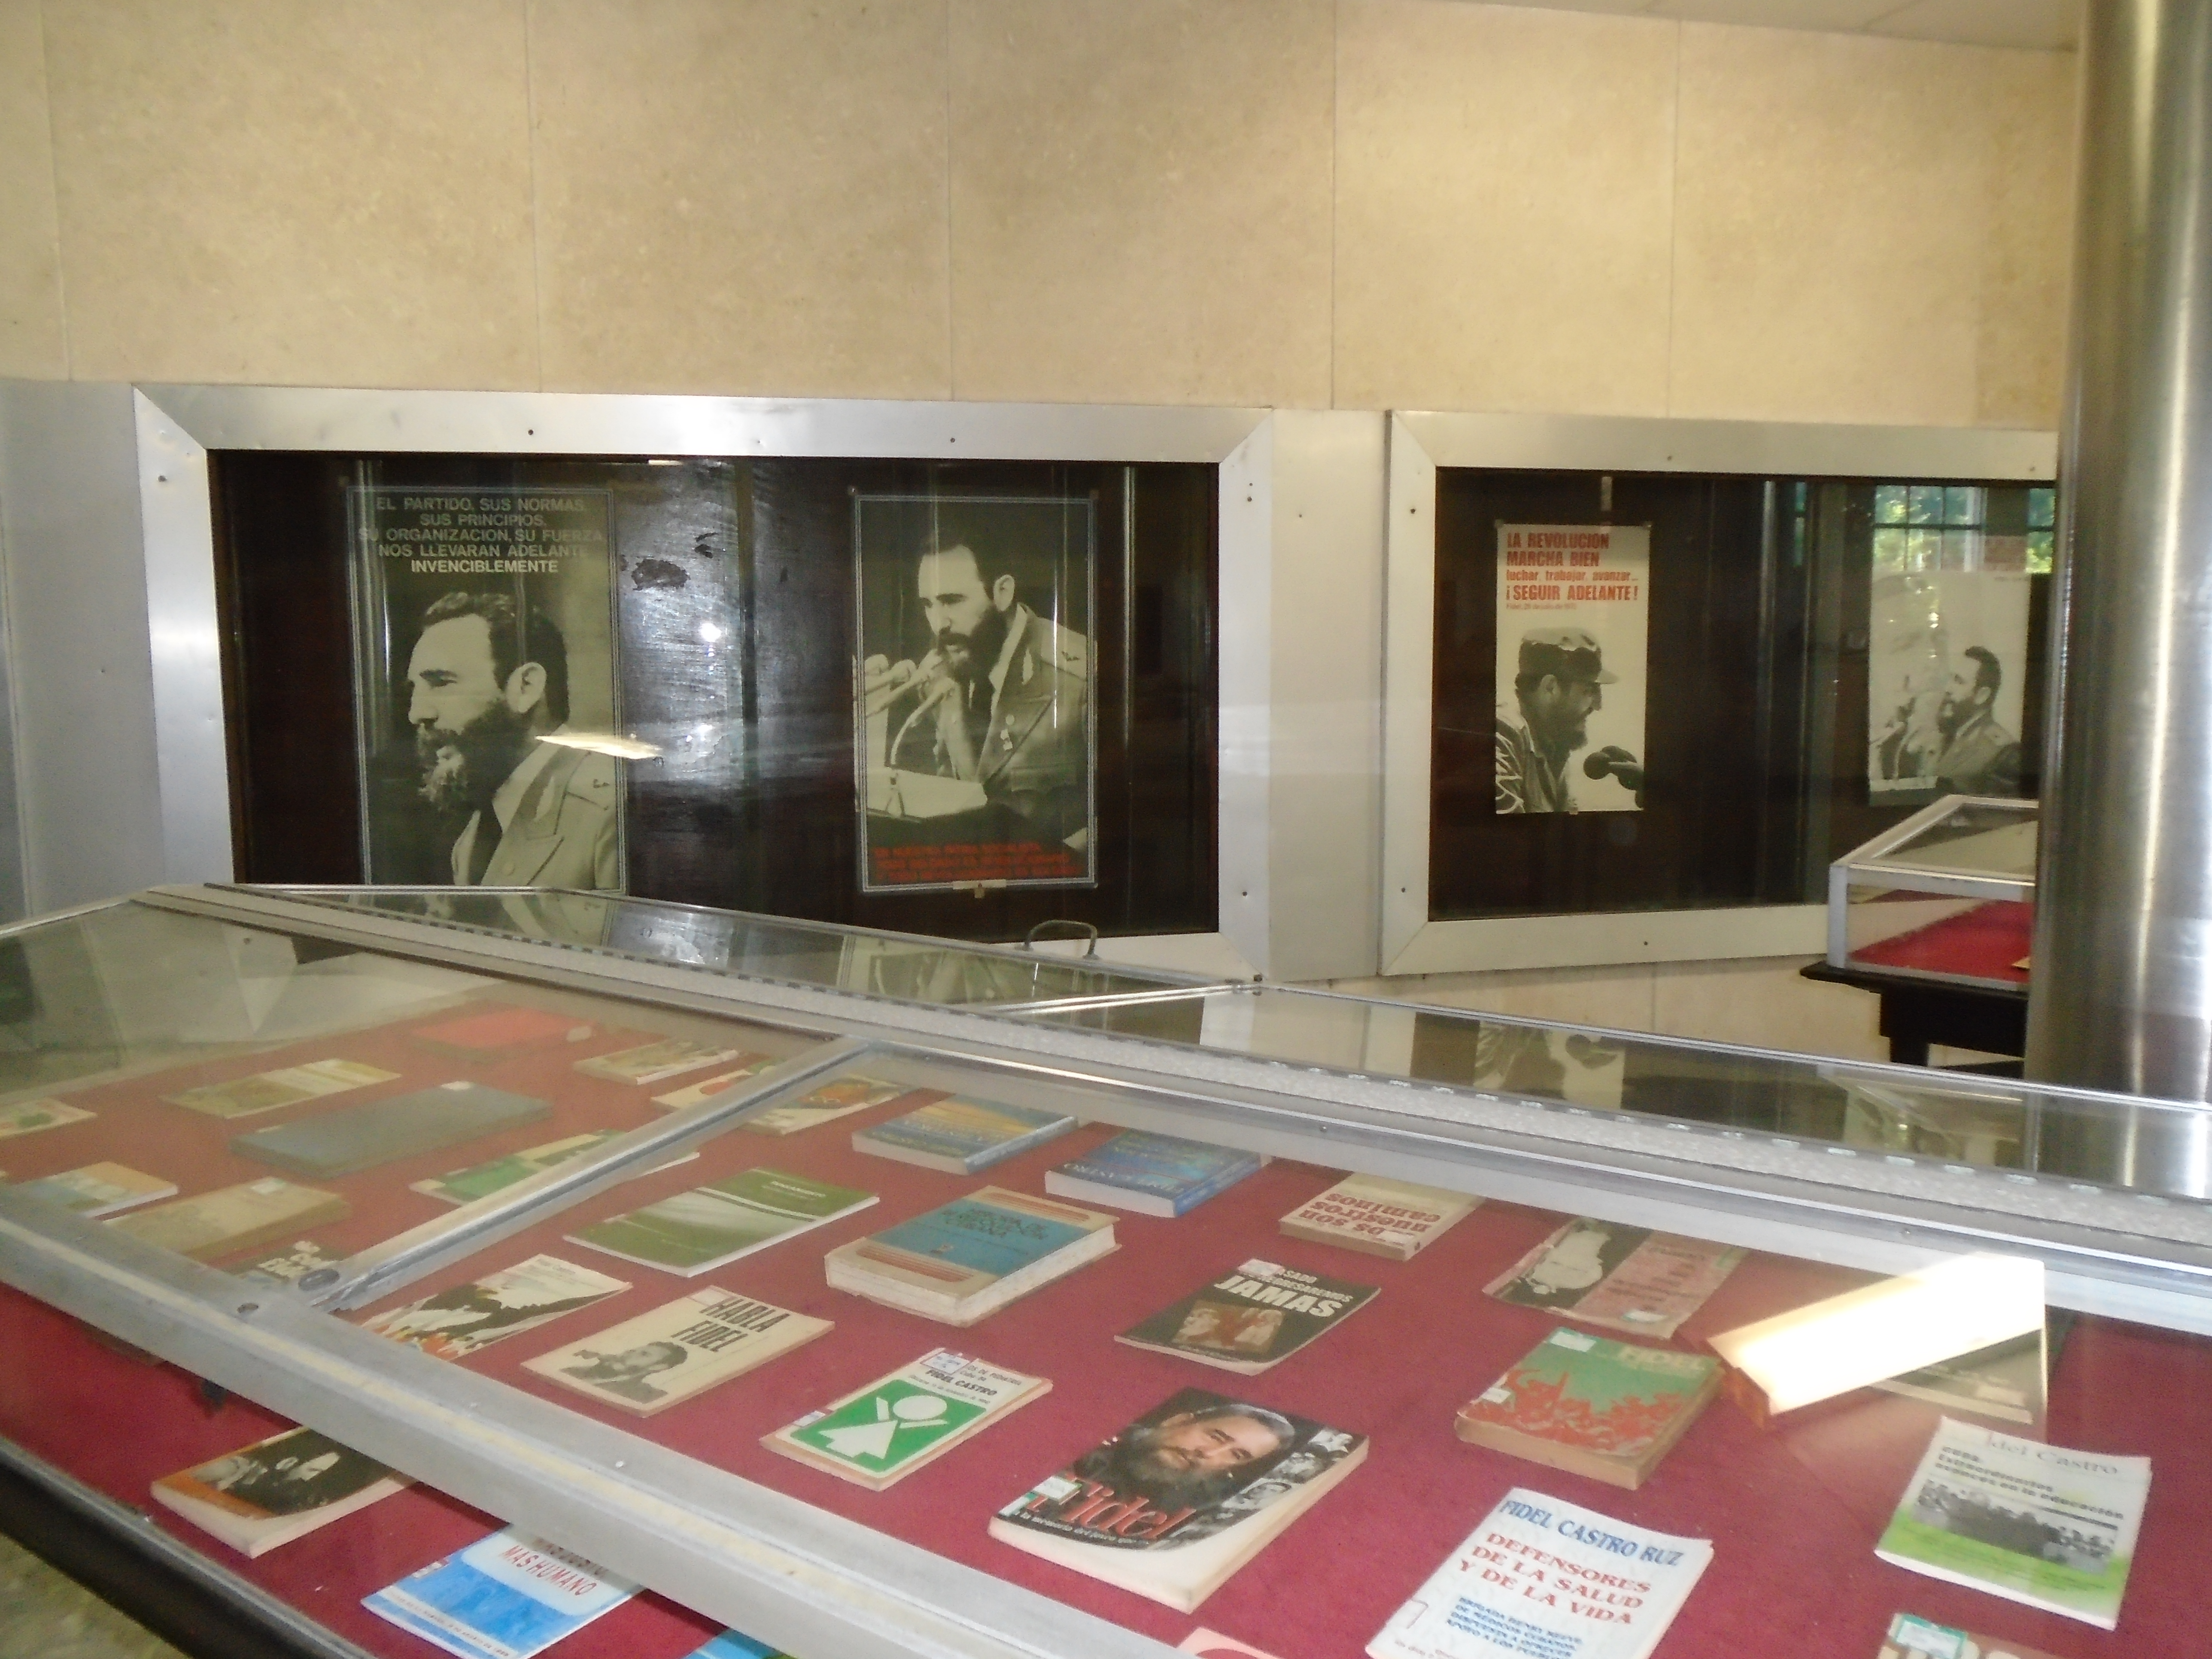 Biblioteca Nacional de Cuba “José Martí” rememora a Fidel en aniversario de su natalicio